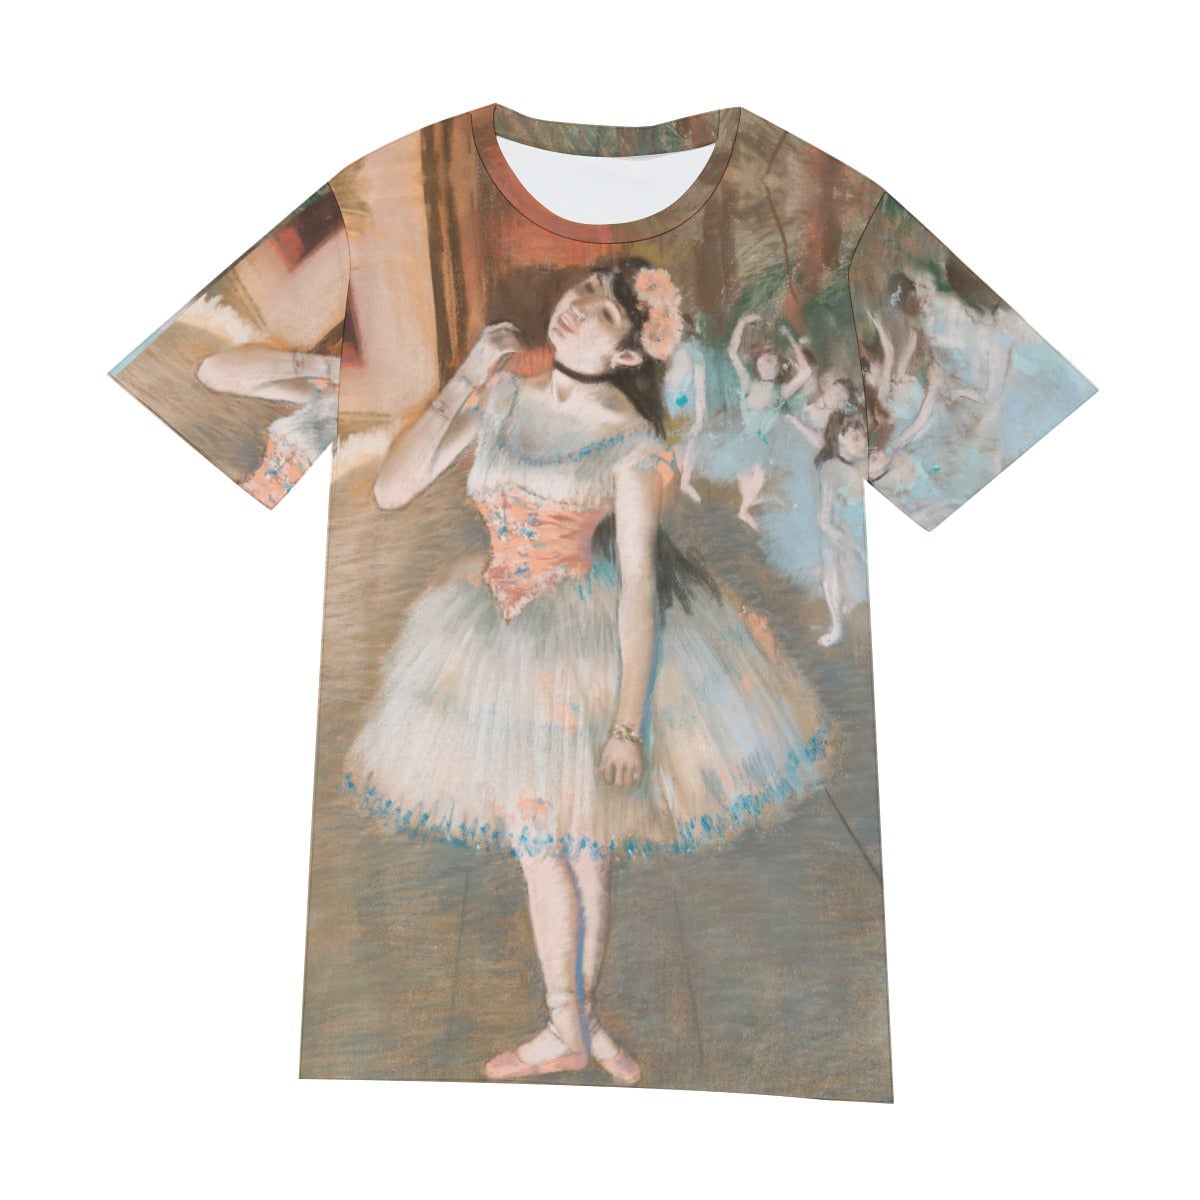 The Star Ballet Dancer by Edgar Degas T-Shirt